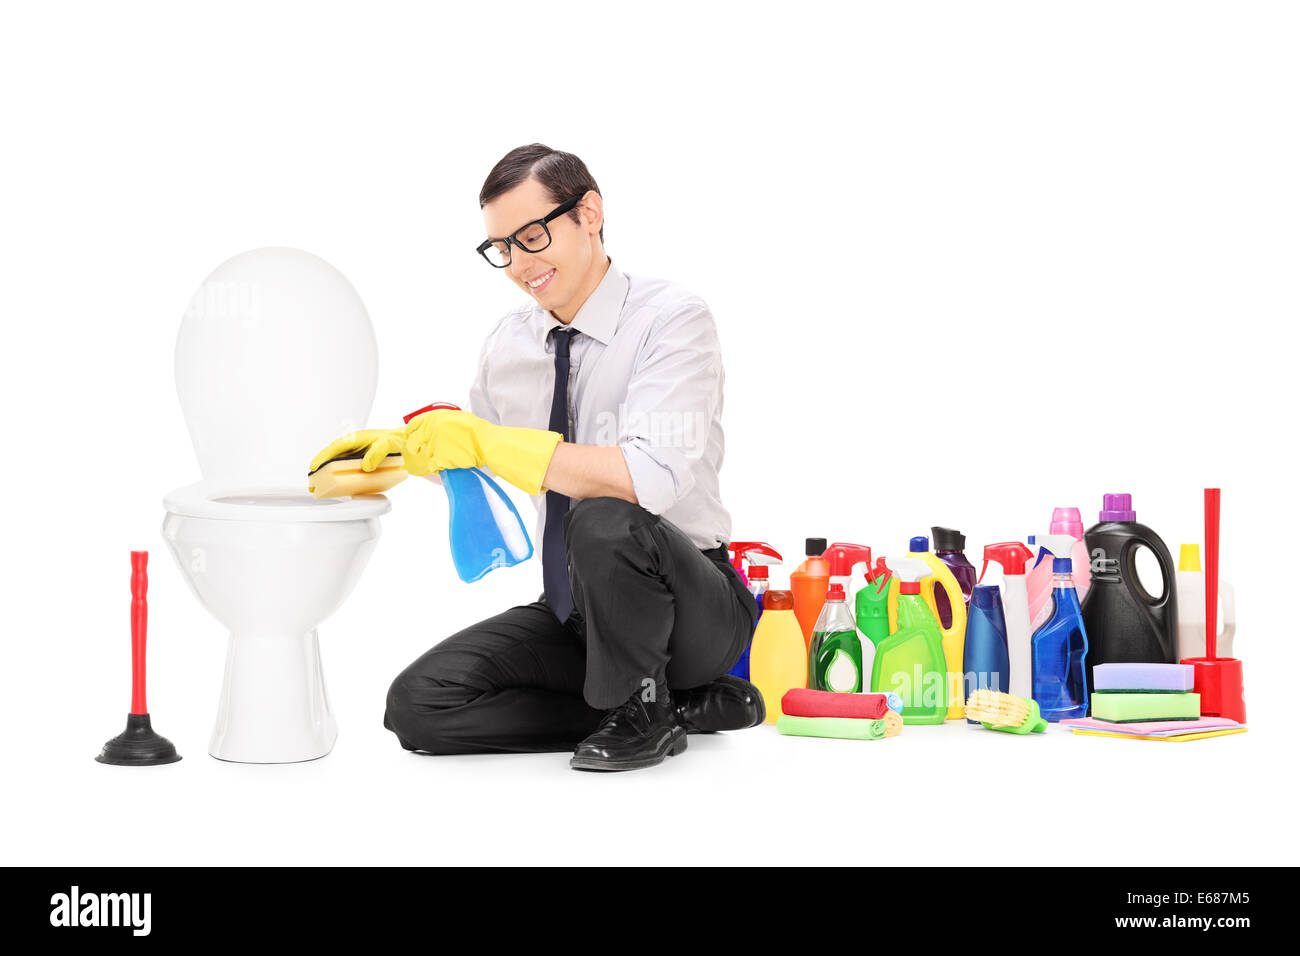 Uomo seduto da un wc con mazzetto di prodotti di pulizia dietro di lui Foto Stock